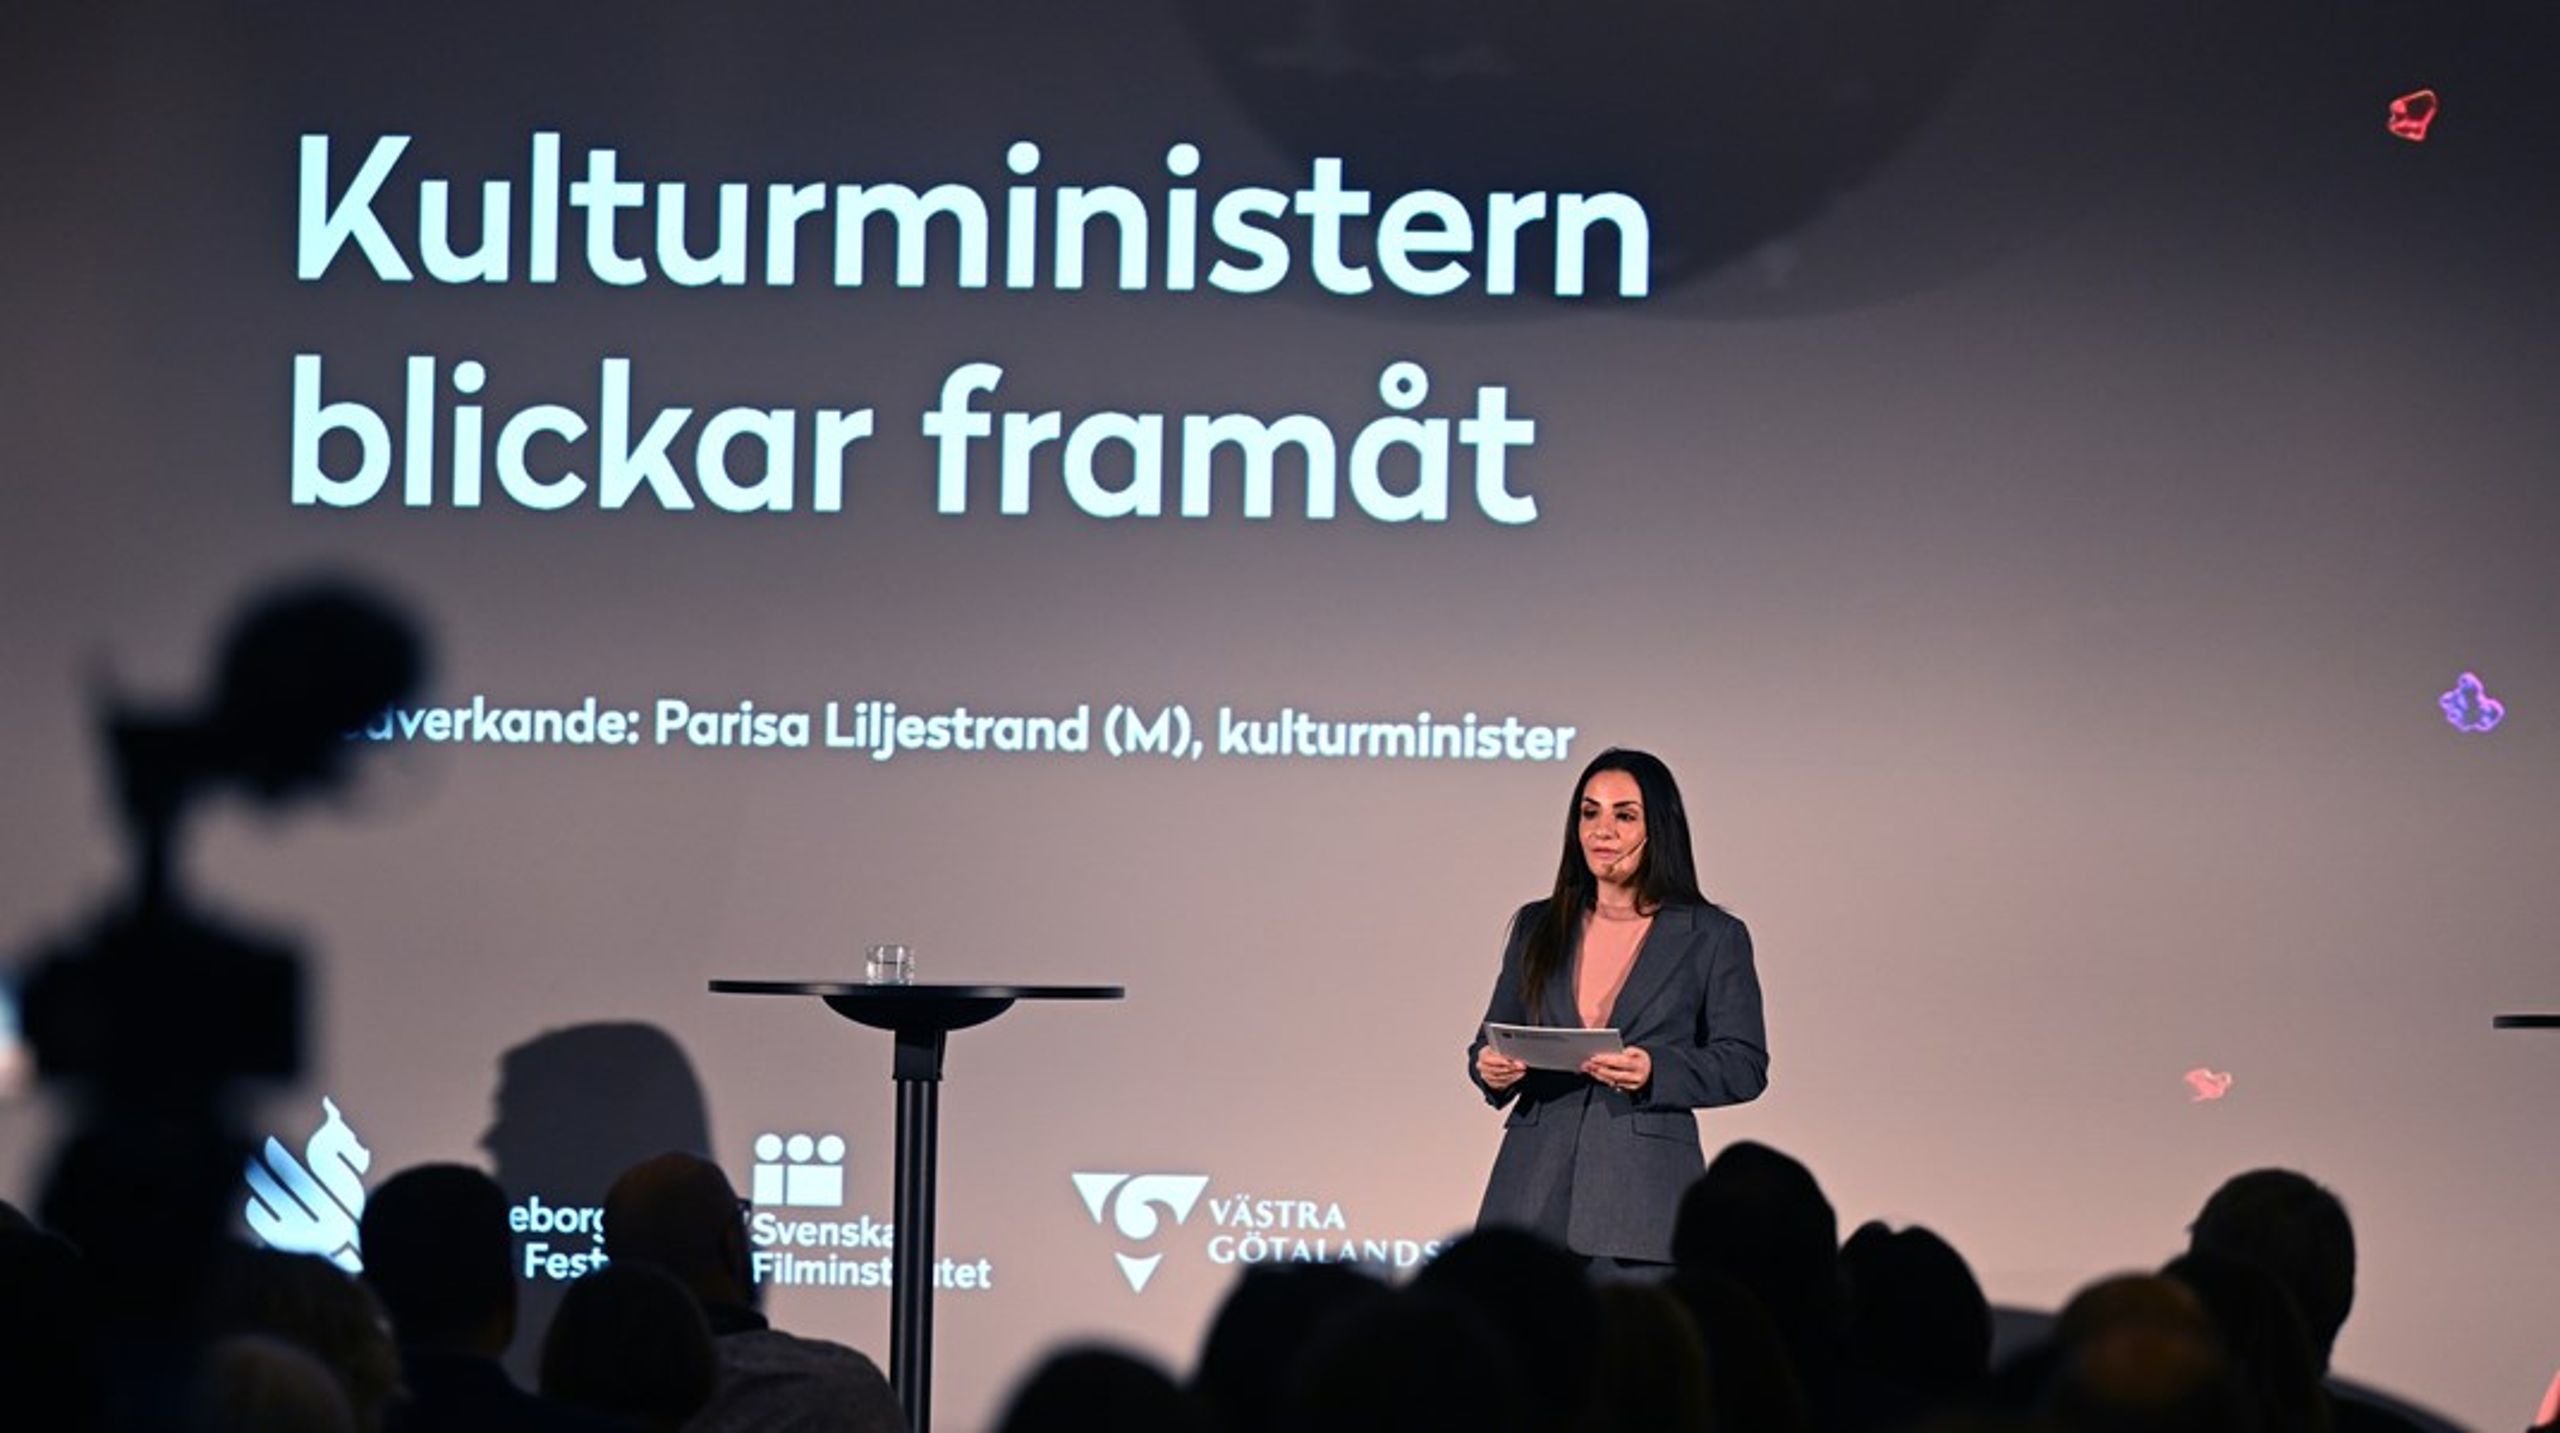 Vilka förslag kulturminister Parisa Liljestrand (M) tar med sig från Mats Svegfors utredning om kultursamverkansmodellen återstår att se. Men nu har intressenterna fått ge sina synpunkter i remissrundan. <br>